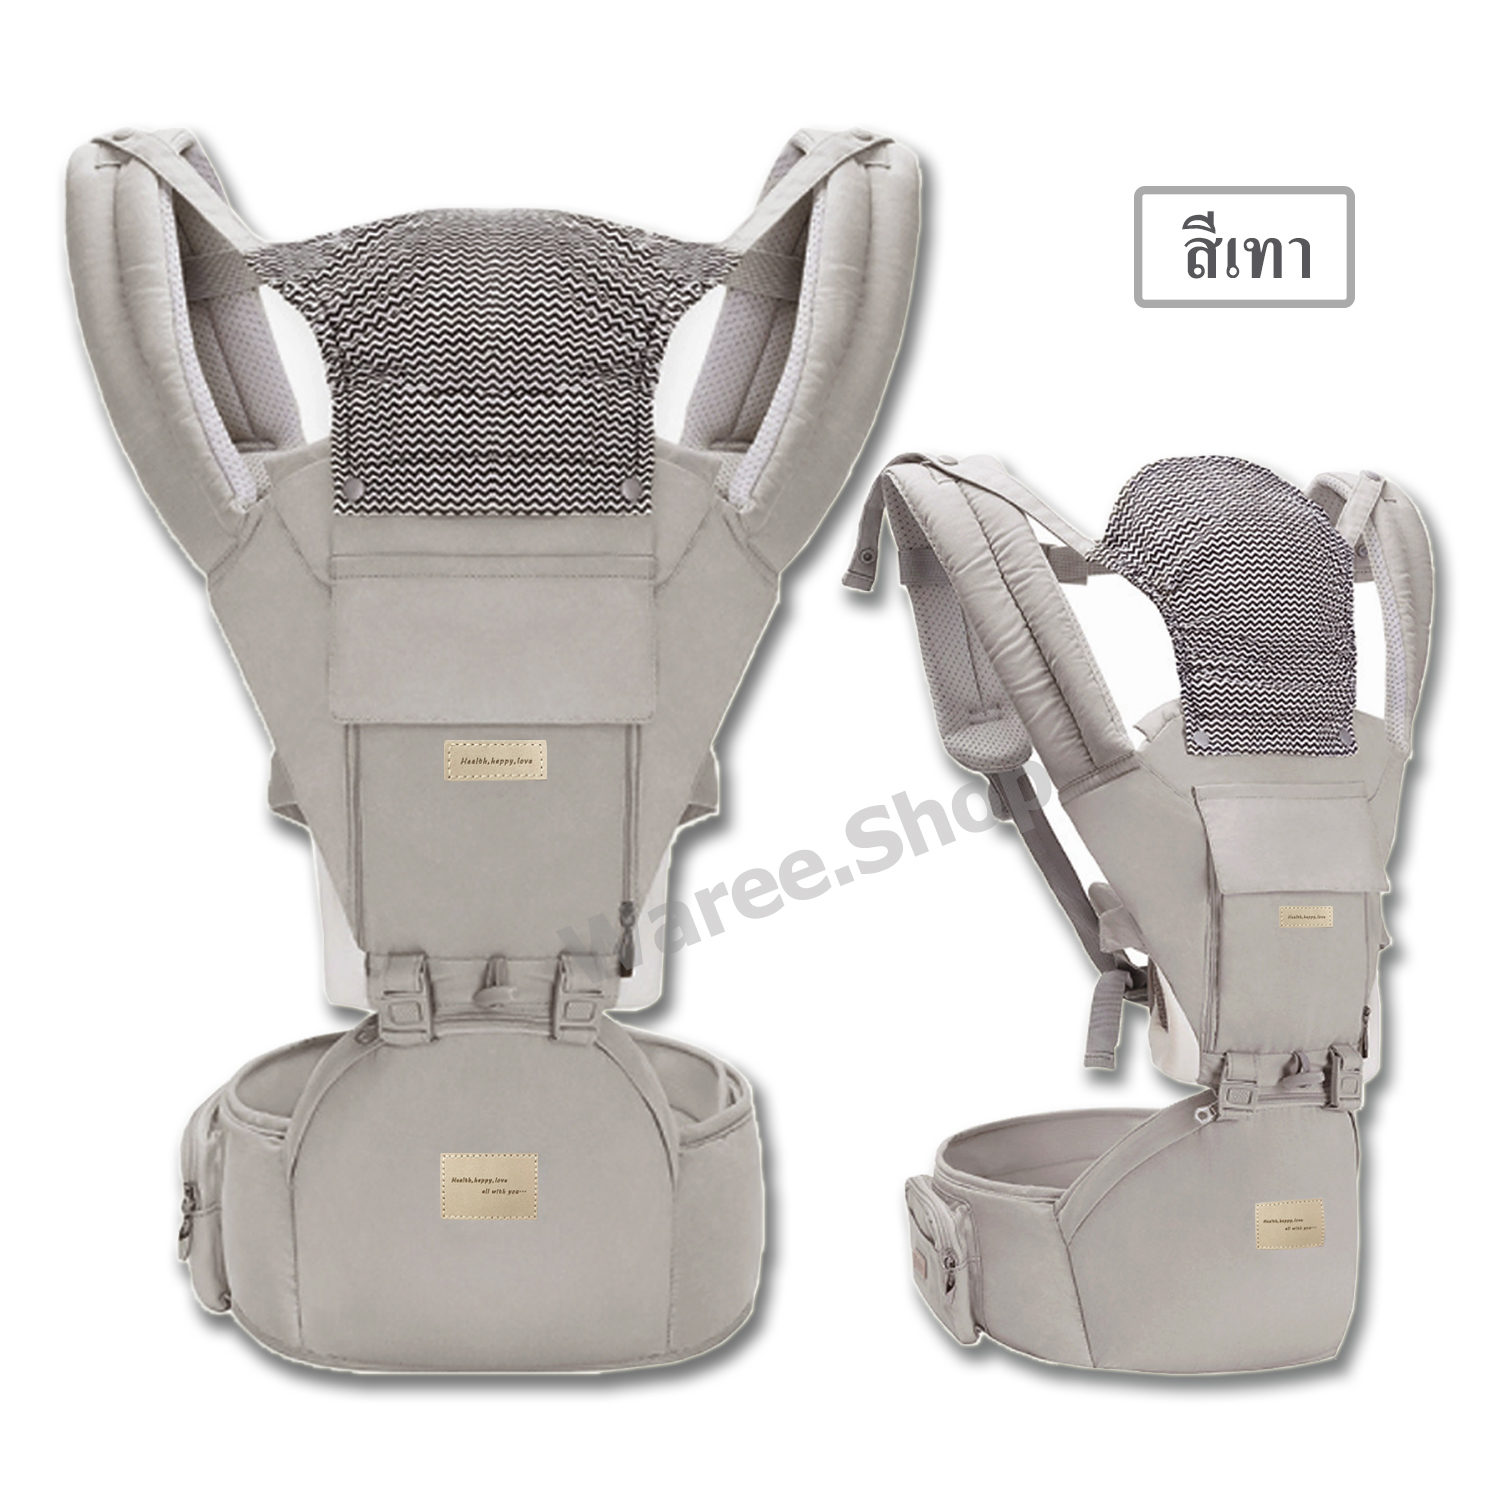 เป้อุ้มเด็ก  Baby Hip Seat Carriers 3 in 1 แบบมีที่นั่งคาดเอว สะพายหน้า สะพายหลัง ถอดเป็นเบาะนั่งได้ พร้อม*หมวกกันแดด ใช้ได้ทั้งหน้าร้อน และหนาว